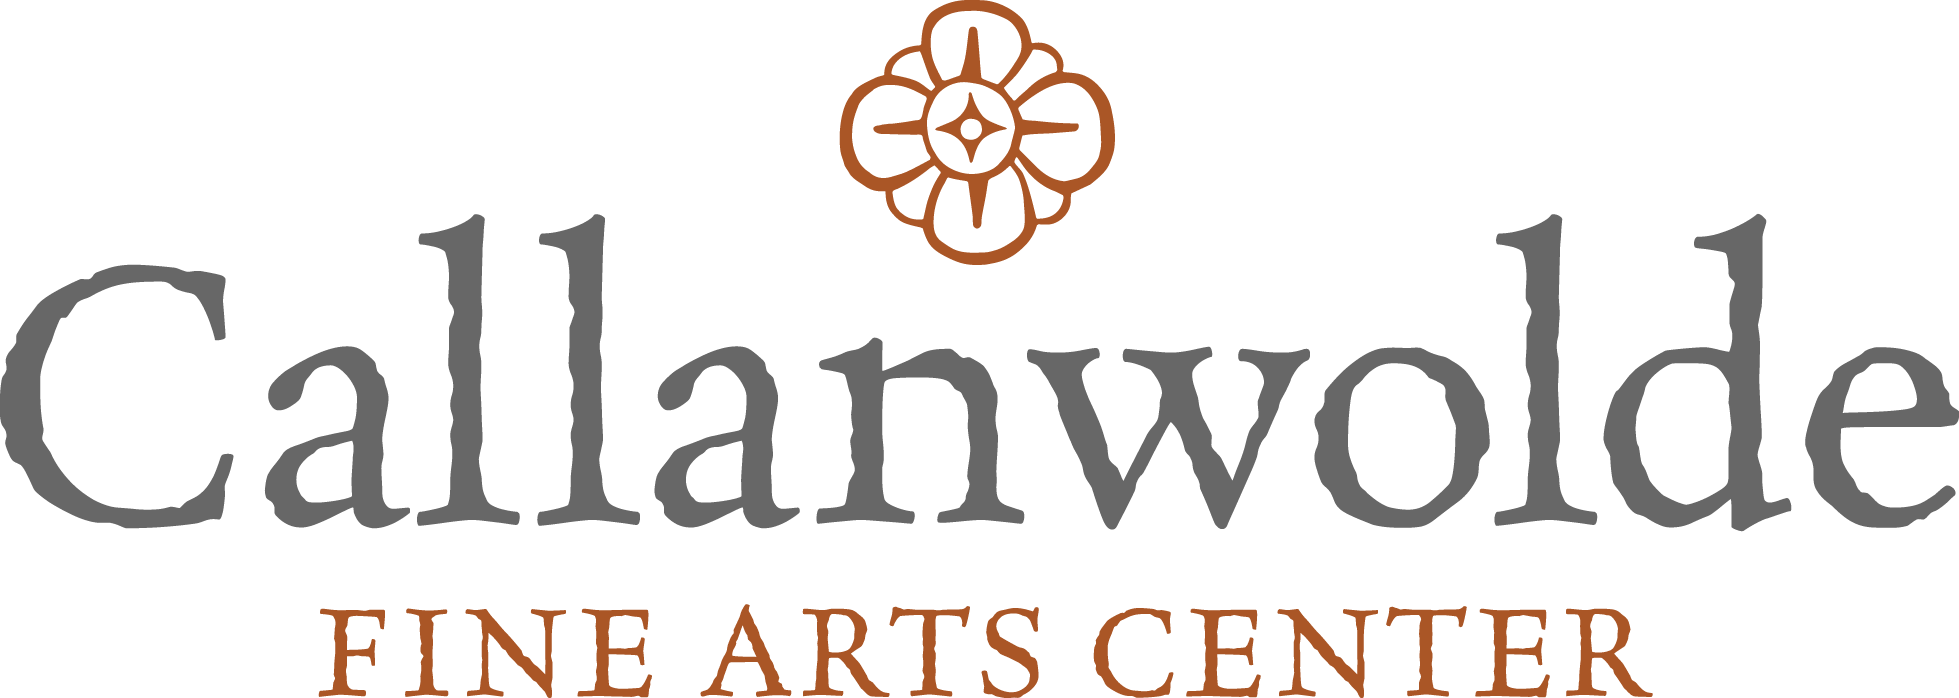 Callanwolde Fine Arts Center